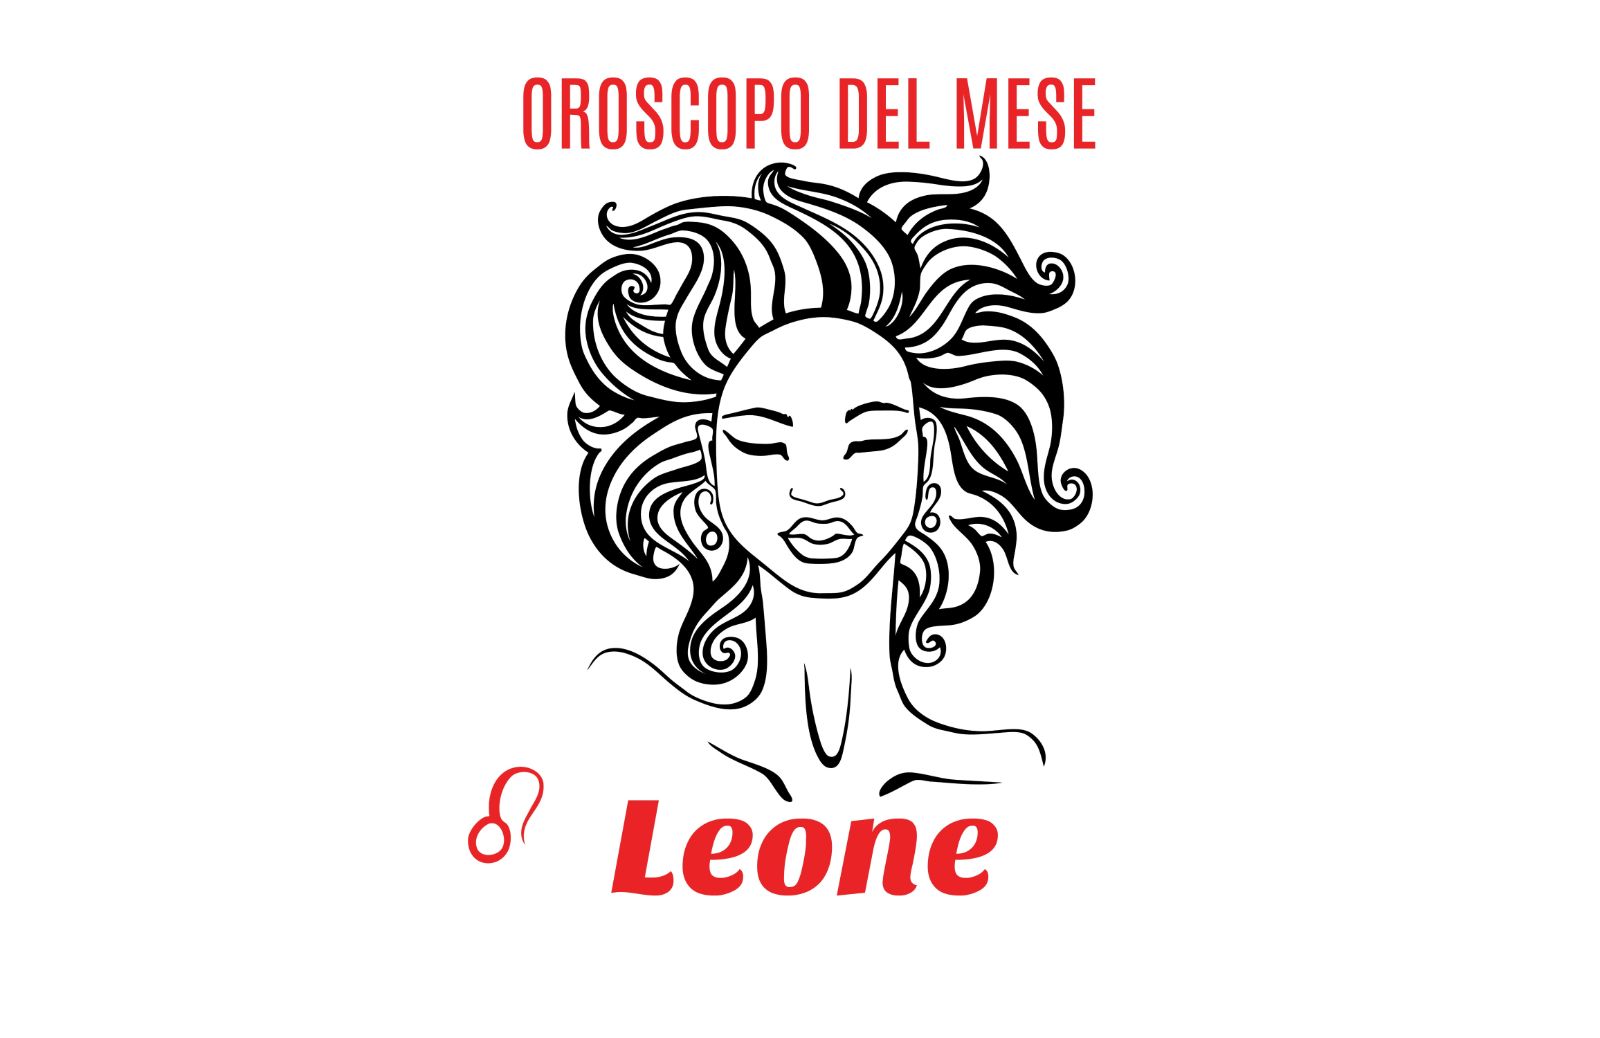 Oroscopo del mese: Leone - aprile 2018